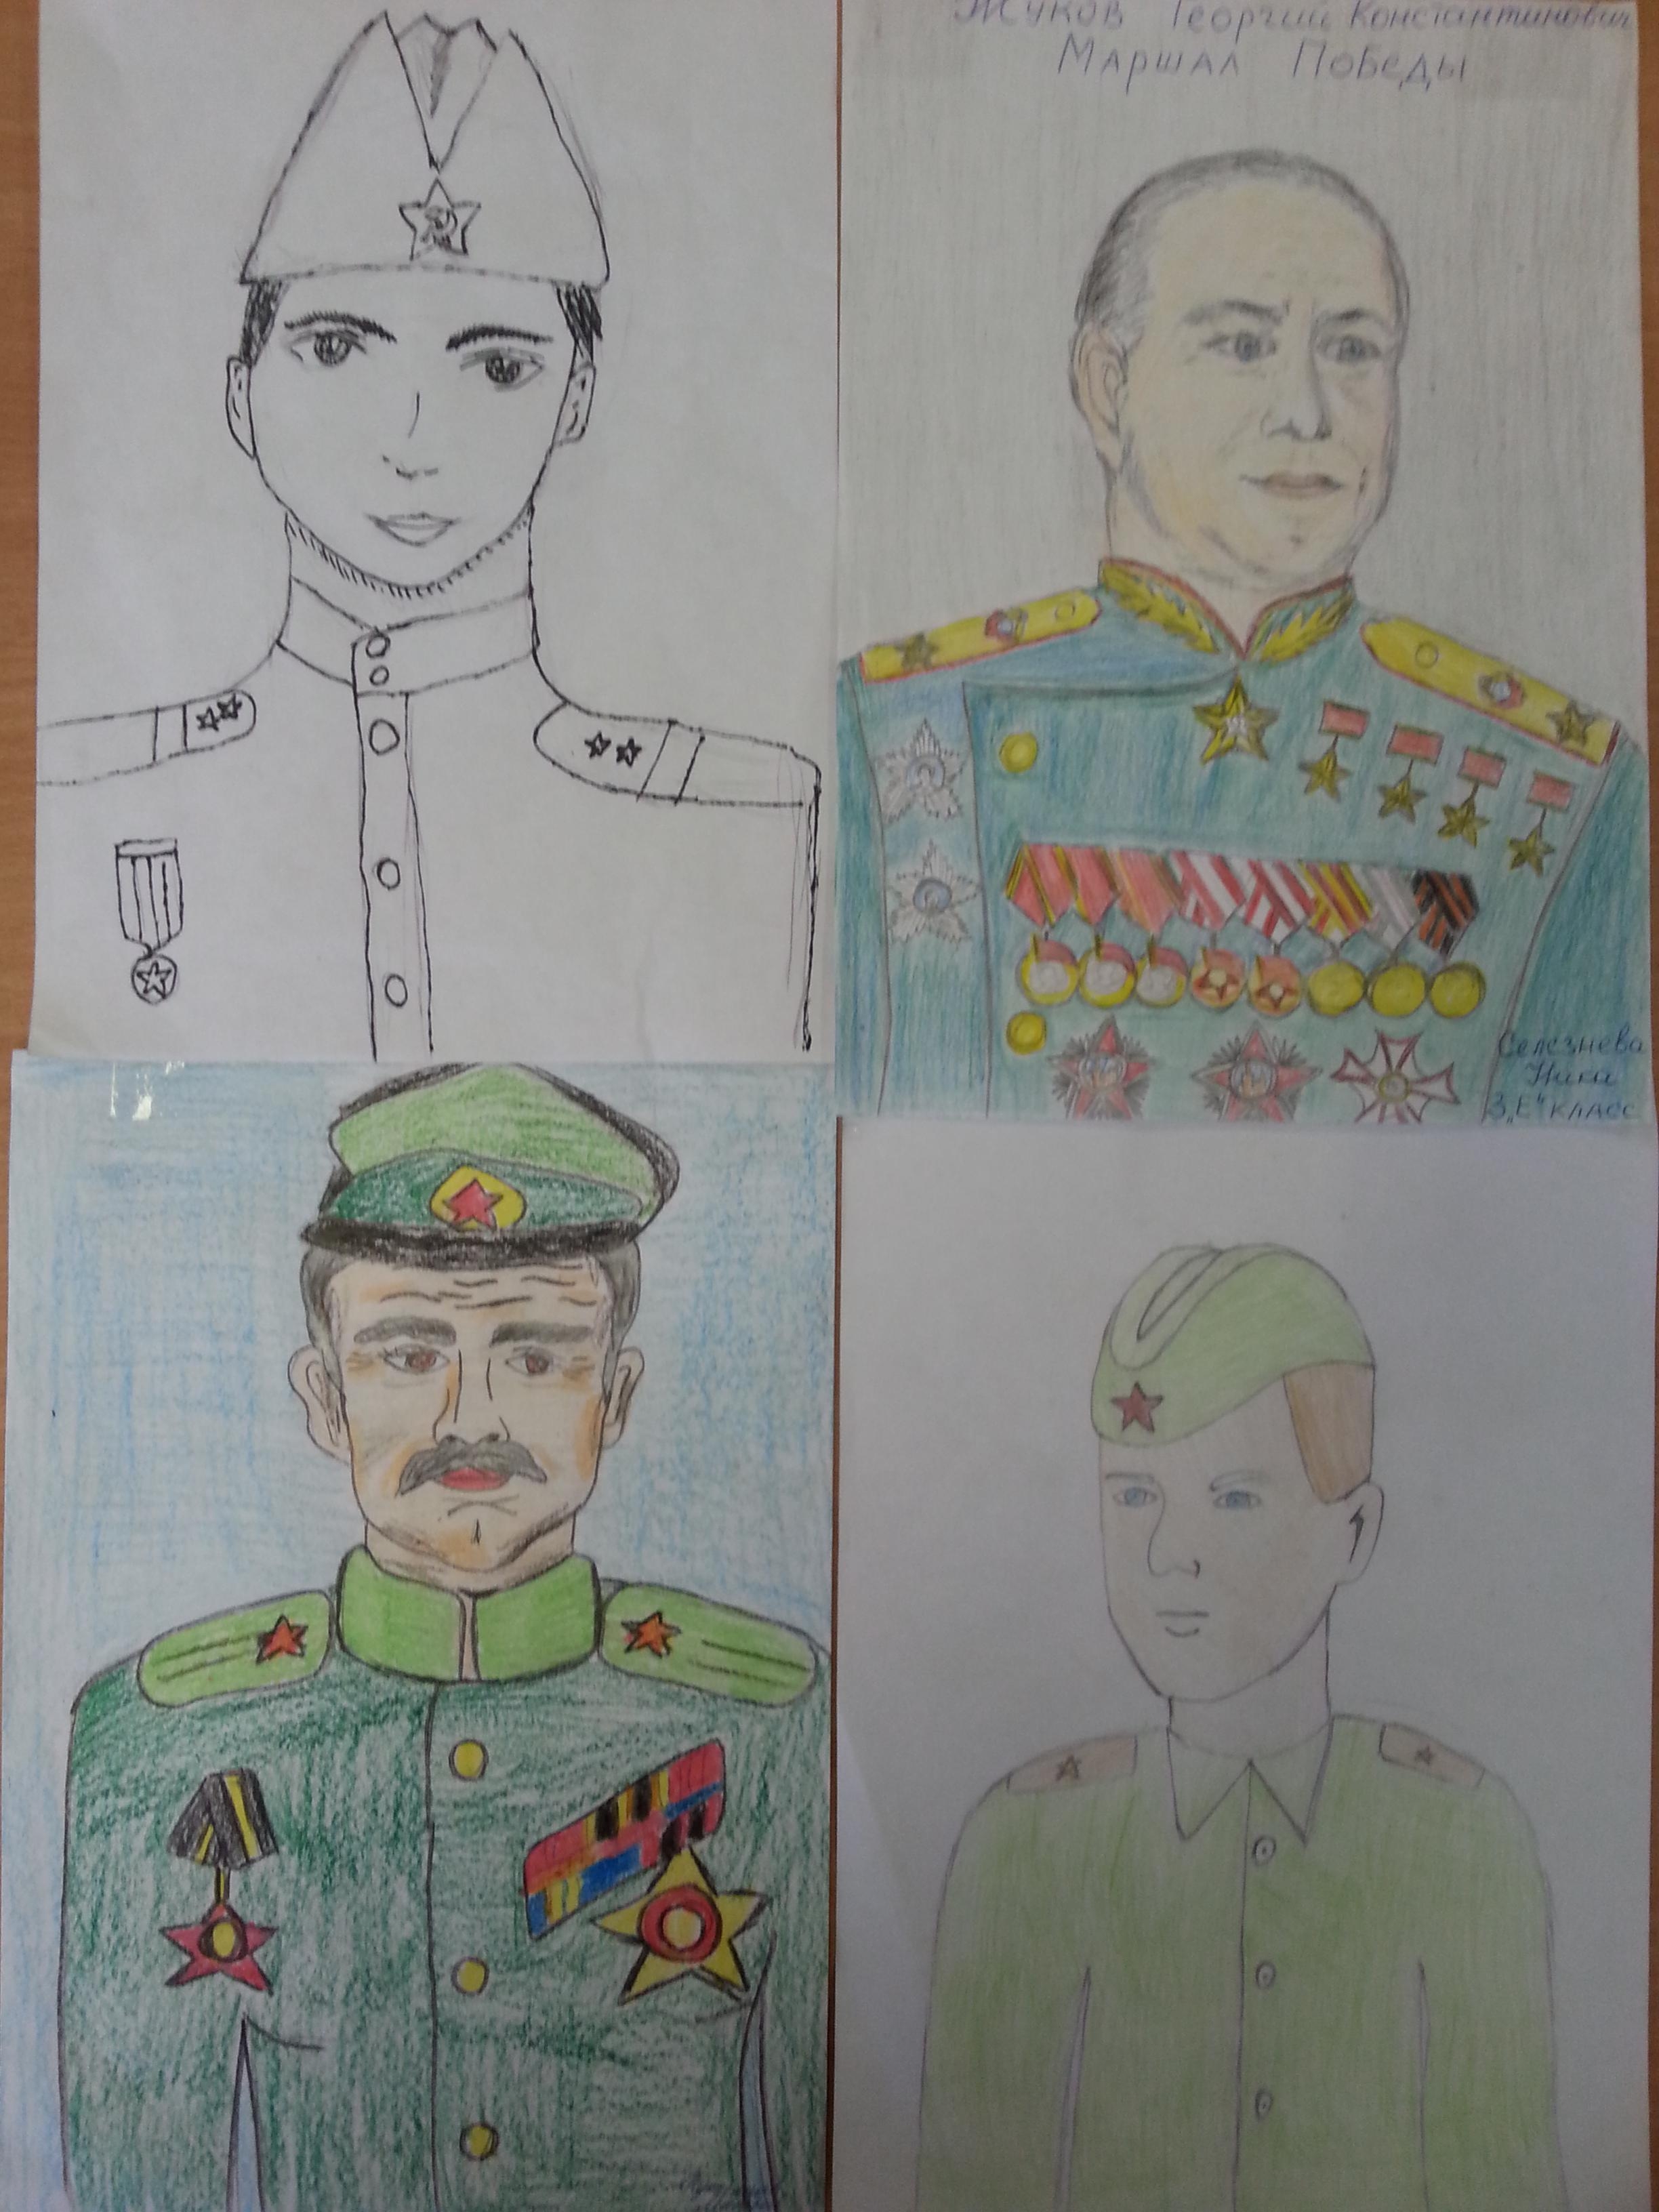 Нарисовать портрет героя Великой Отечественной войны